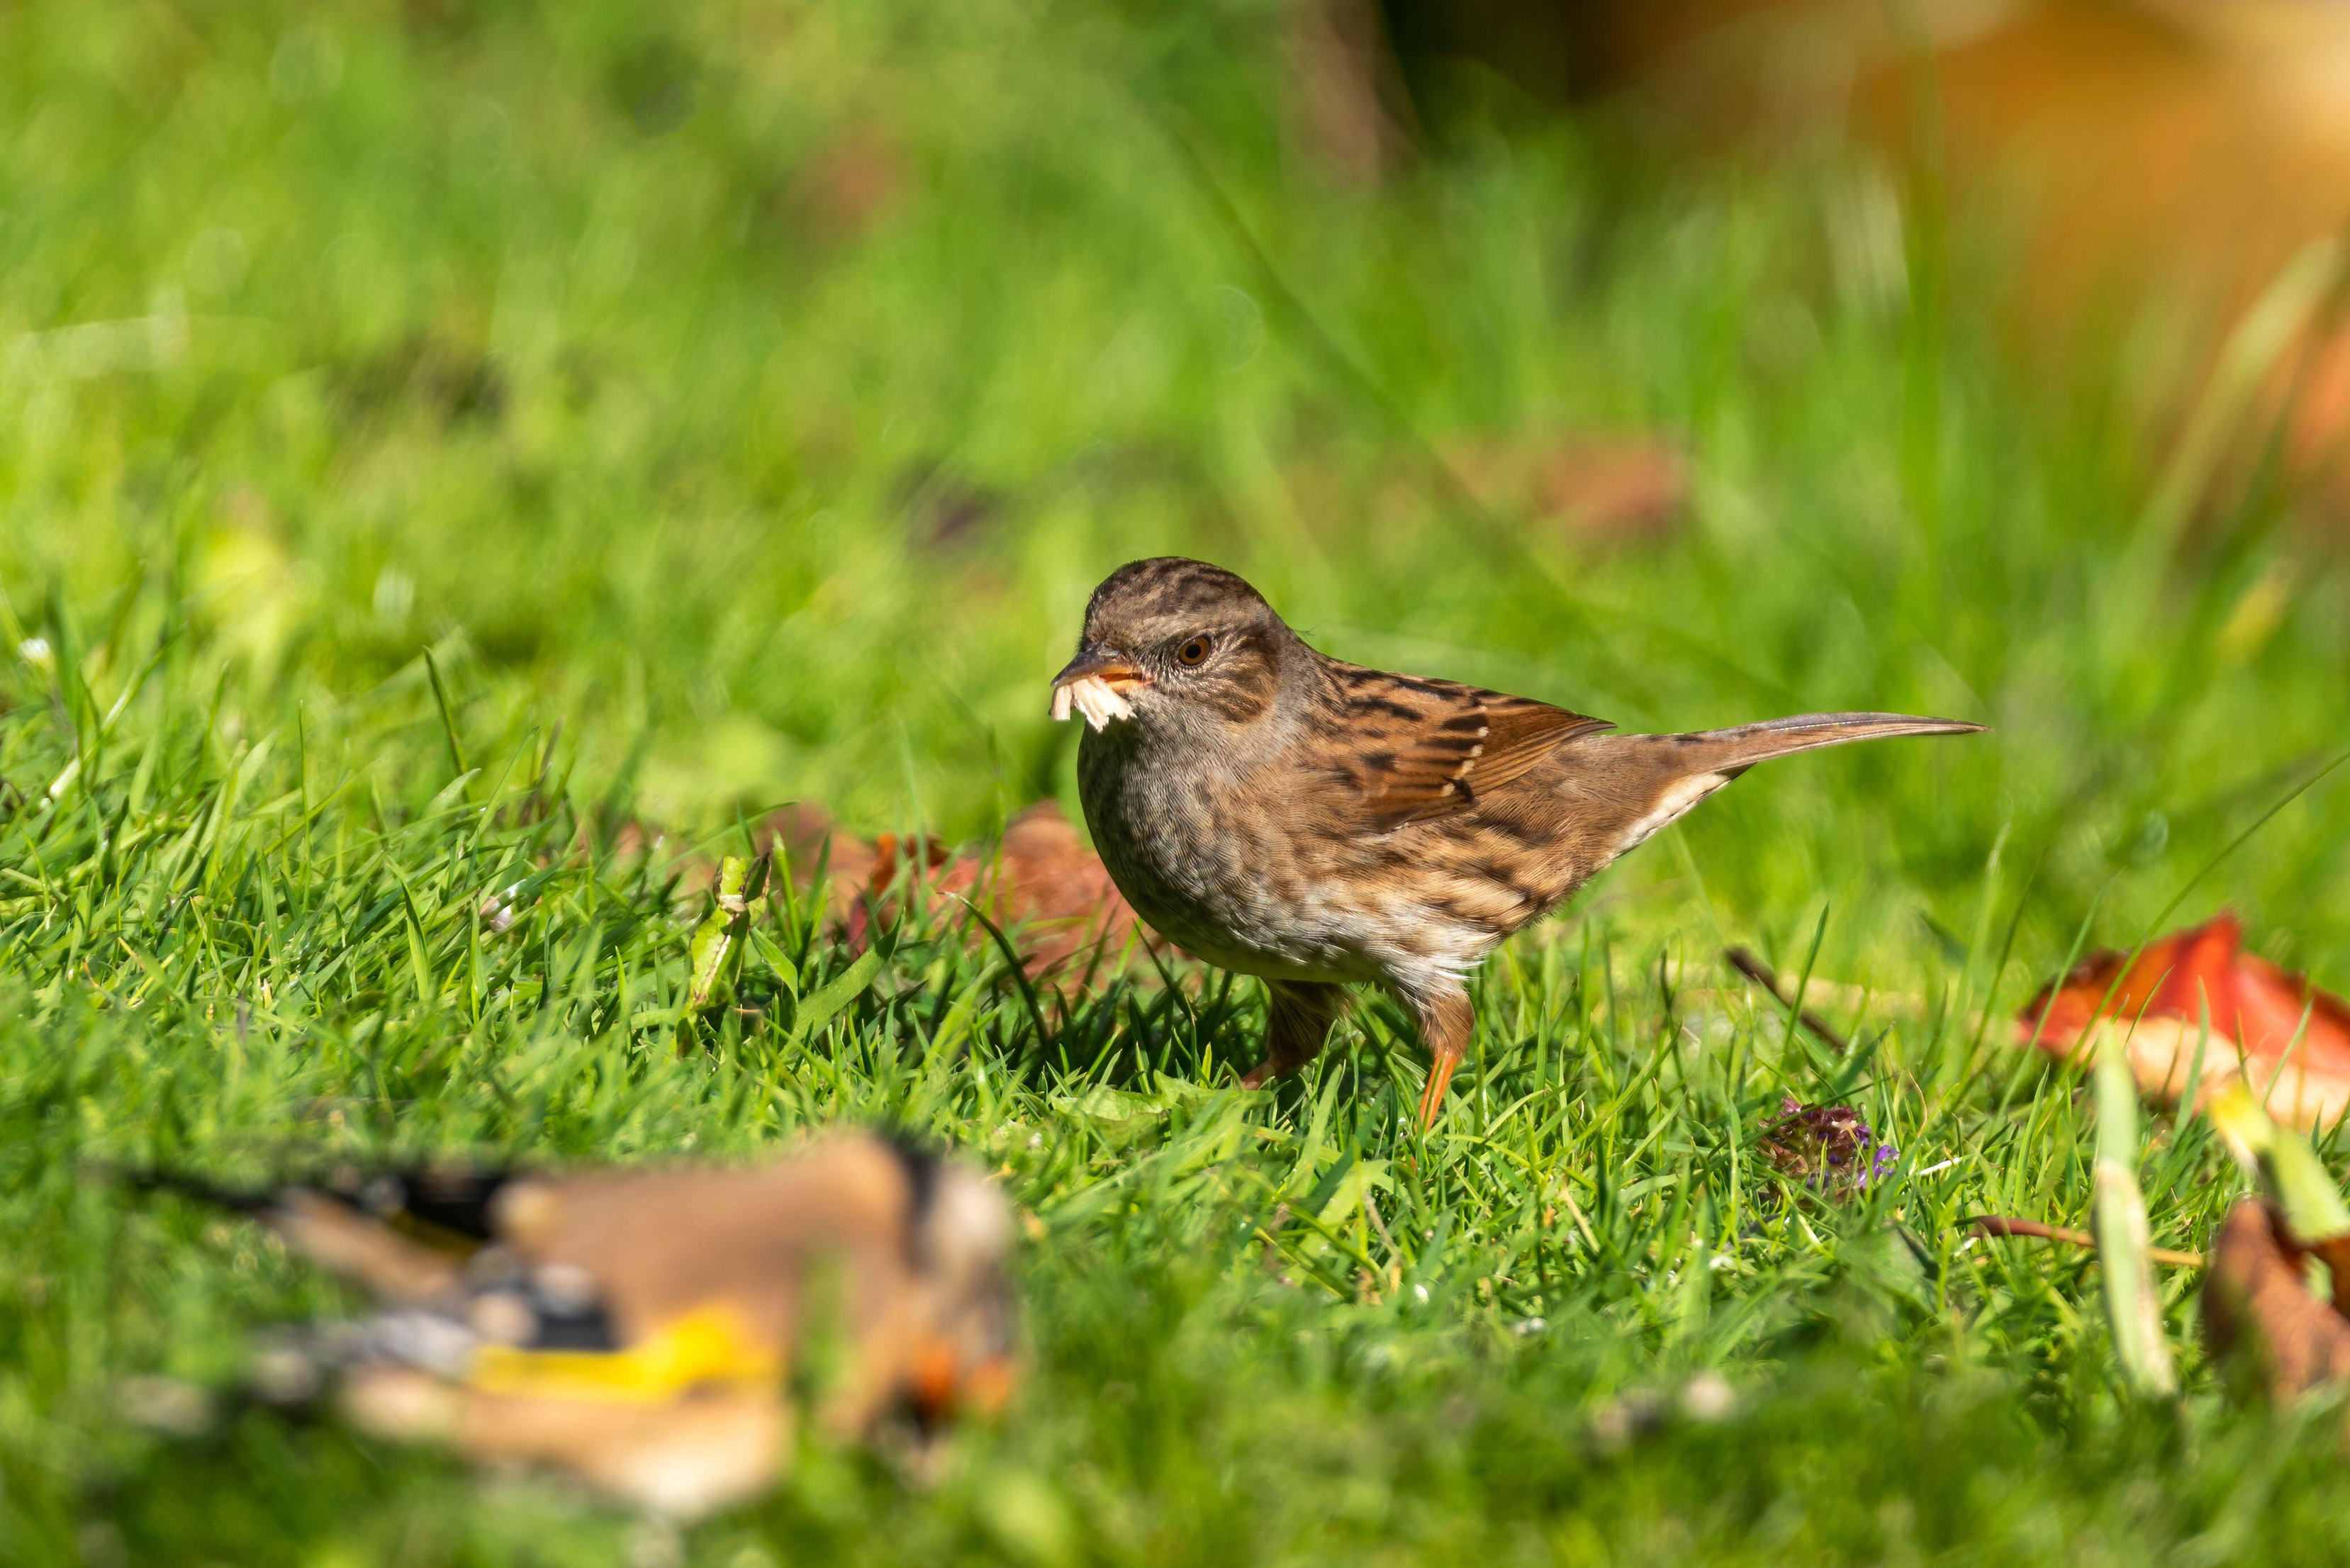 Dunnock feeding on a lawn (Alamy/PA)